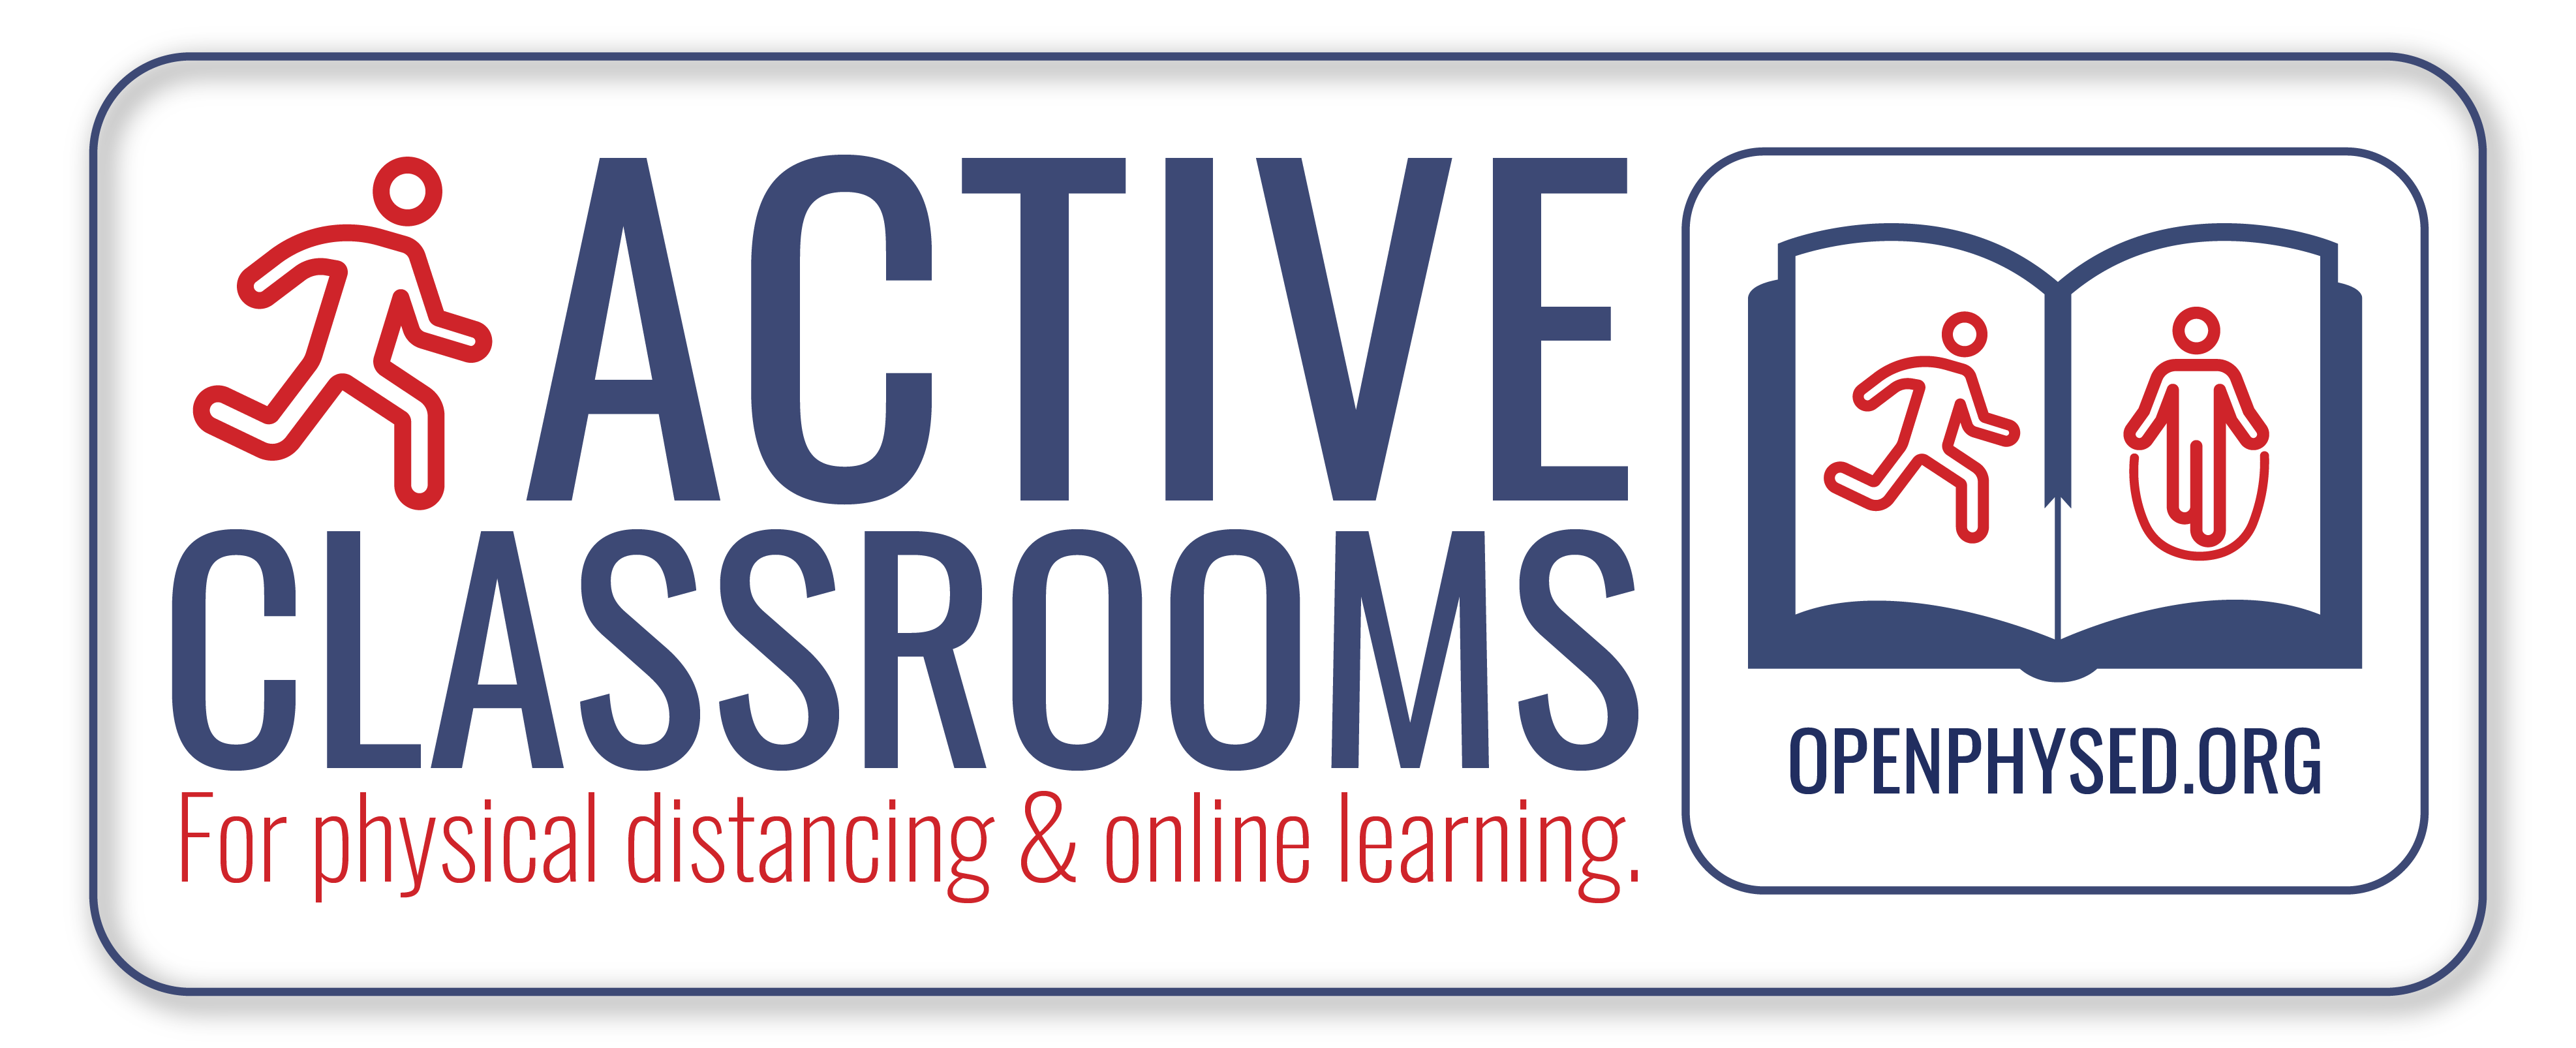 Logotipo de Aulas activas para el distanciamiento físico y el aprendizaje en línea